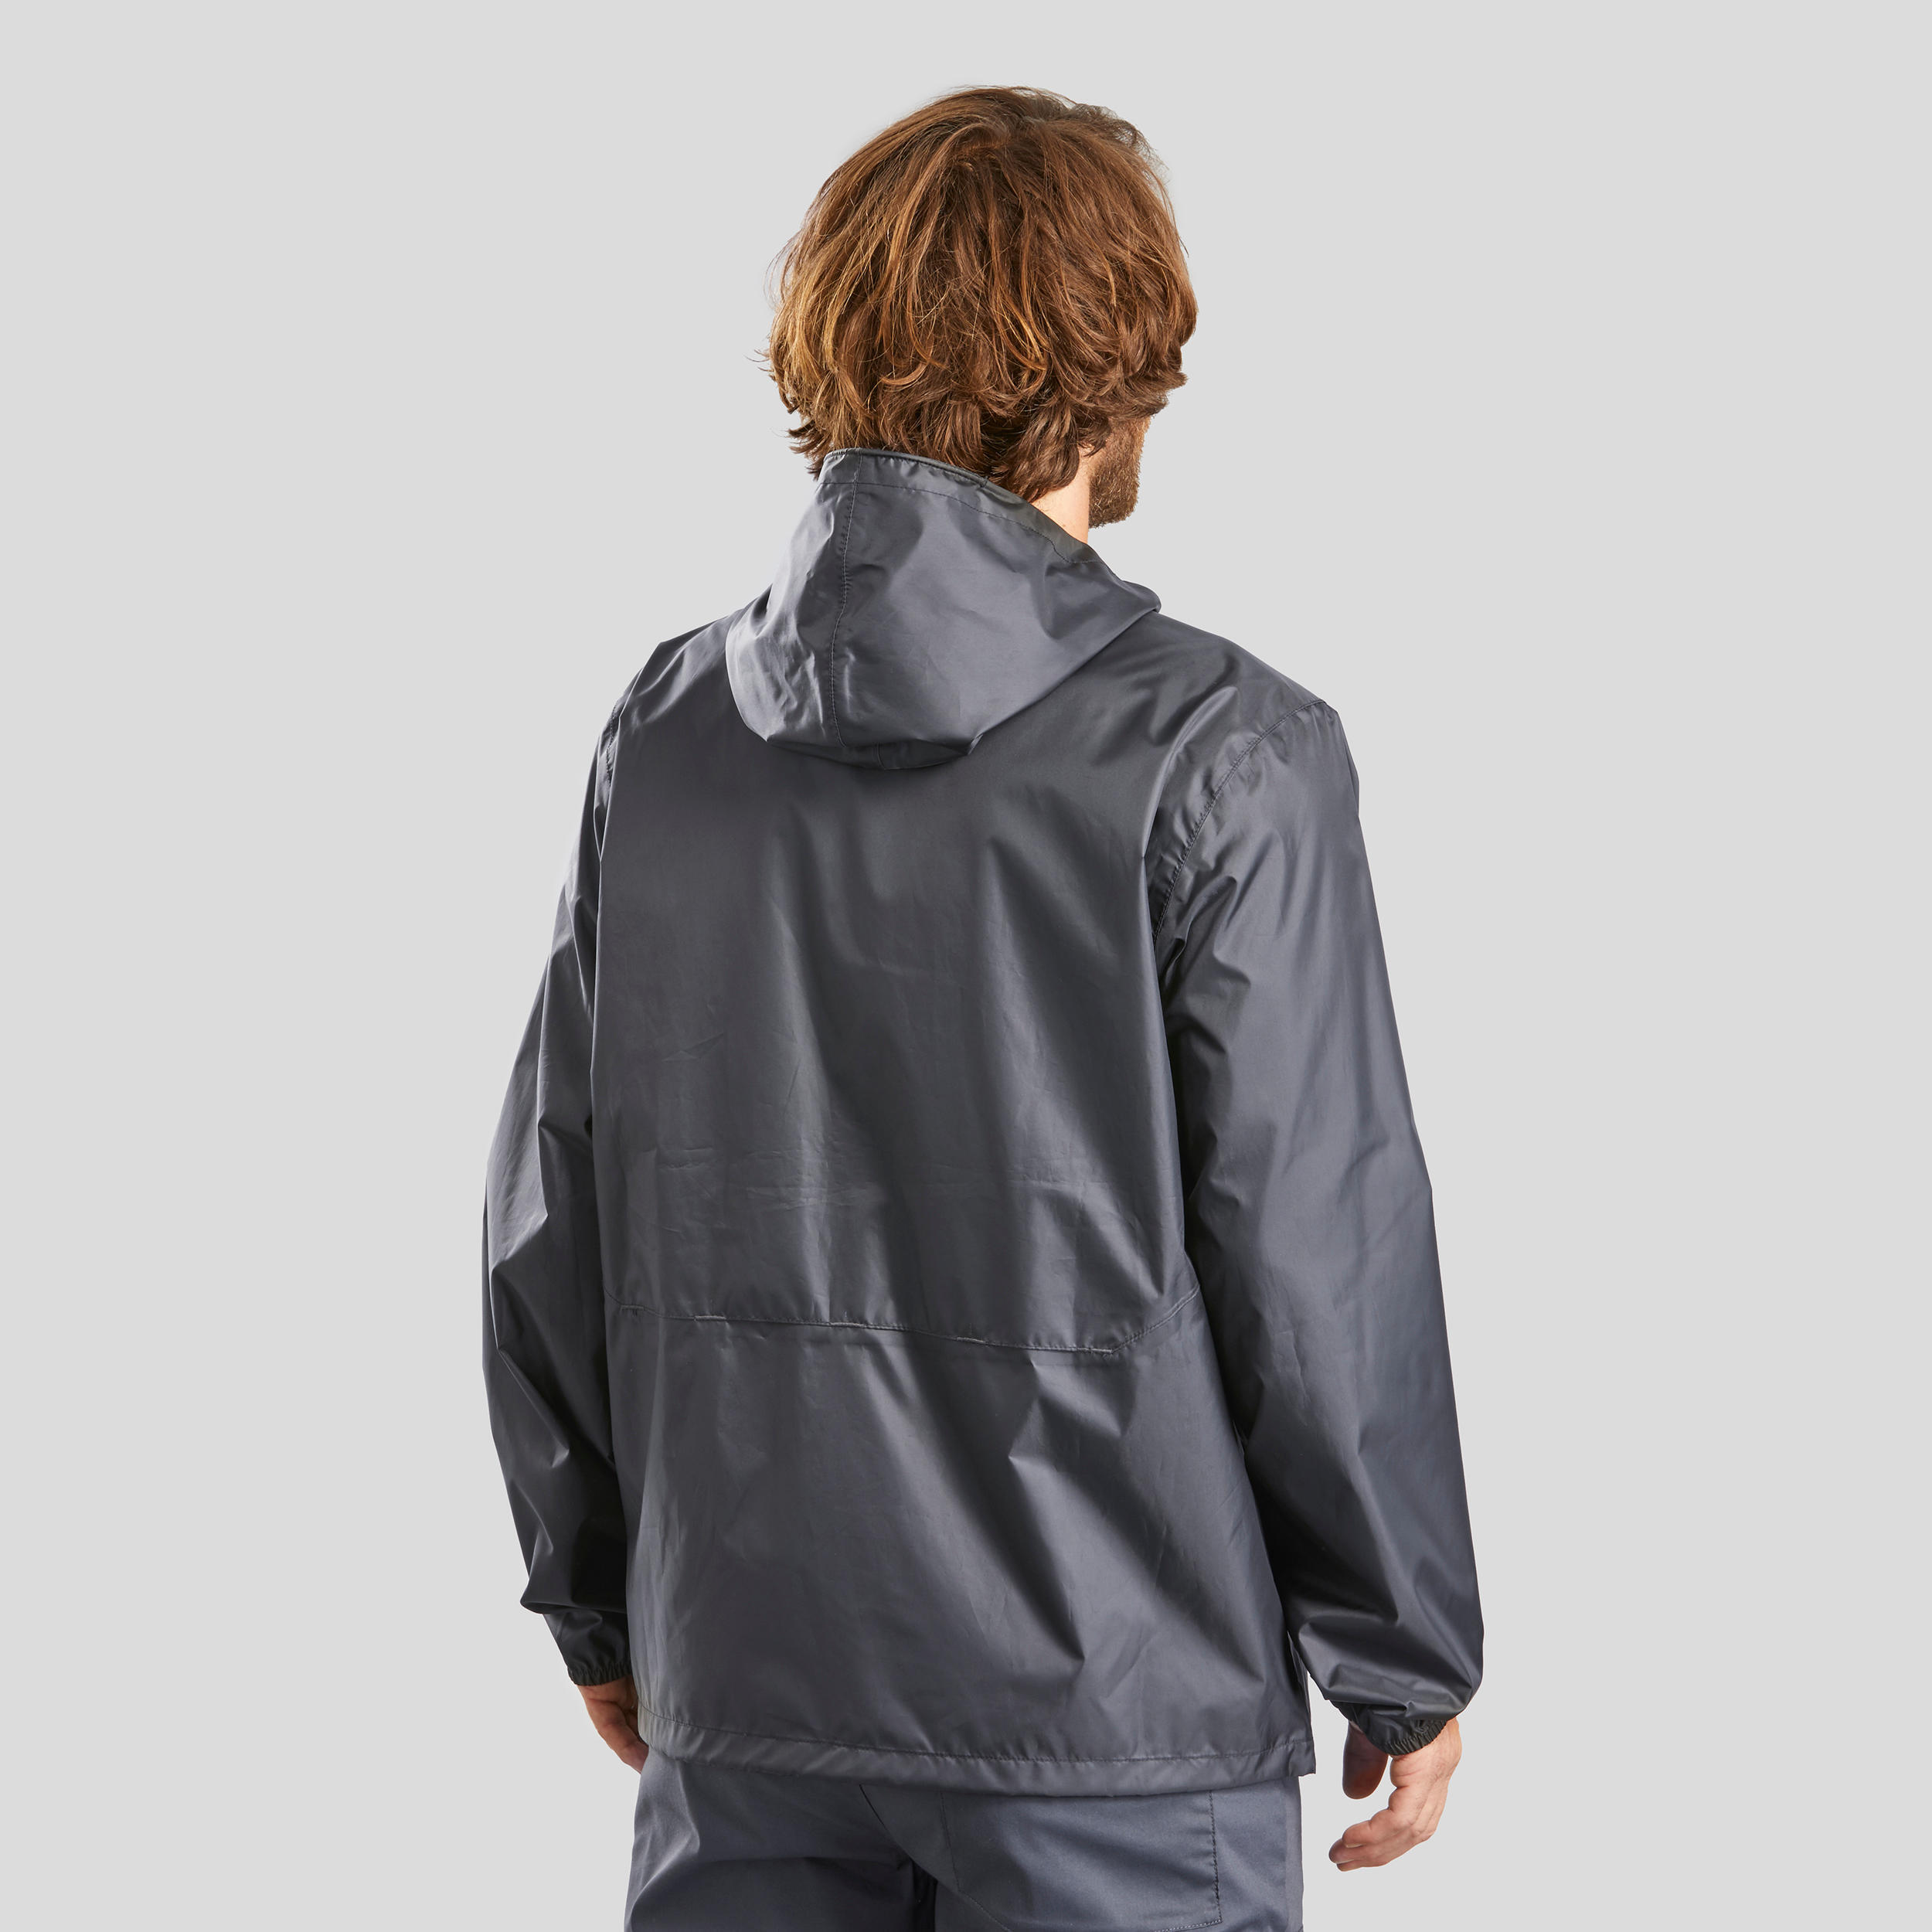 Men's Windproof and Water-repellent Hiking Jacket - Raincut Full Zip 6/11